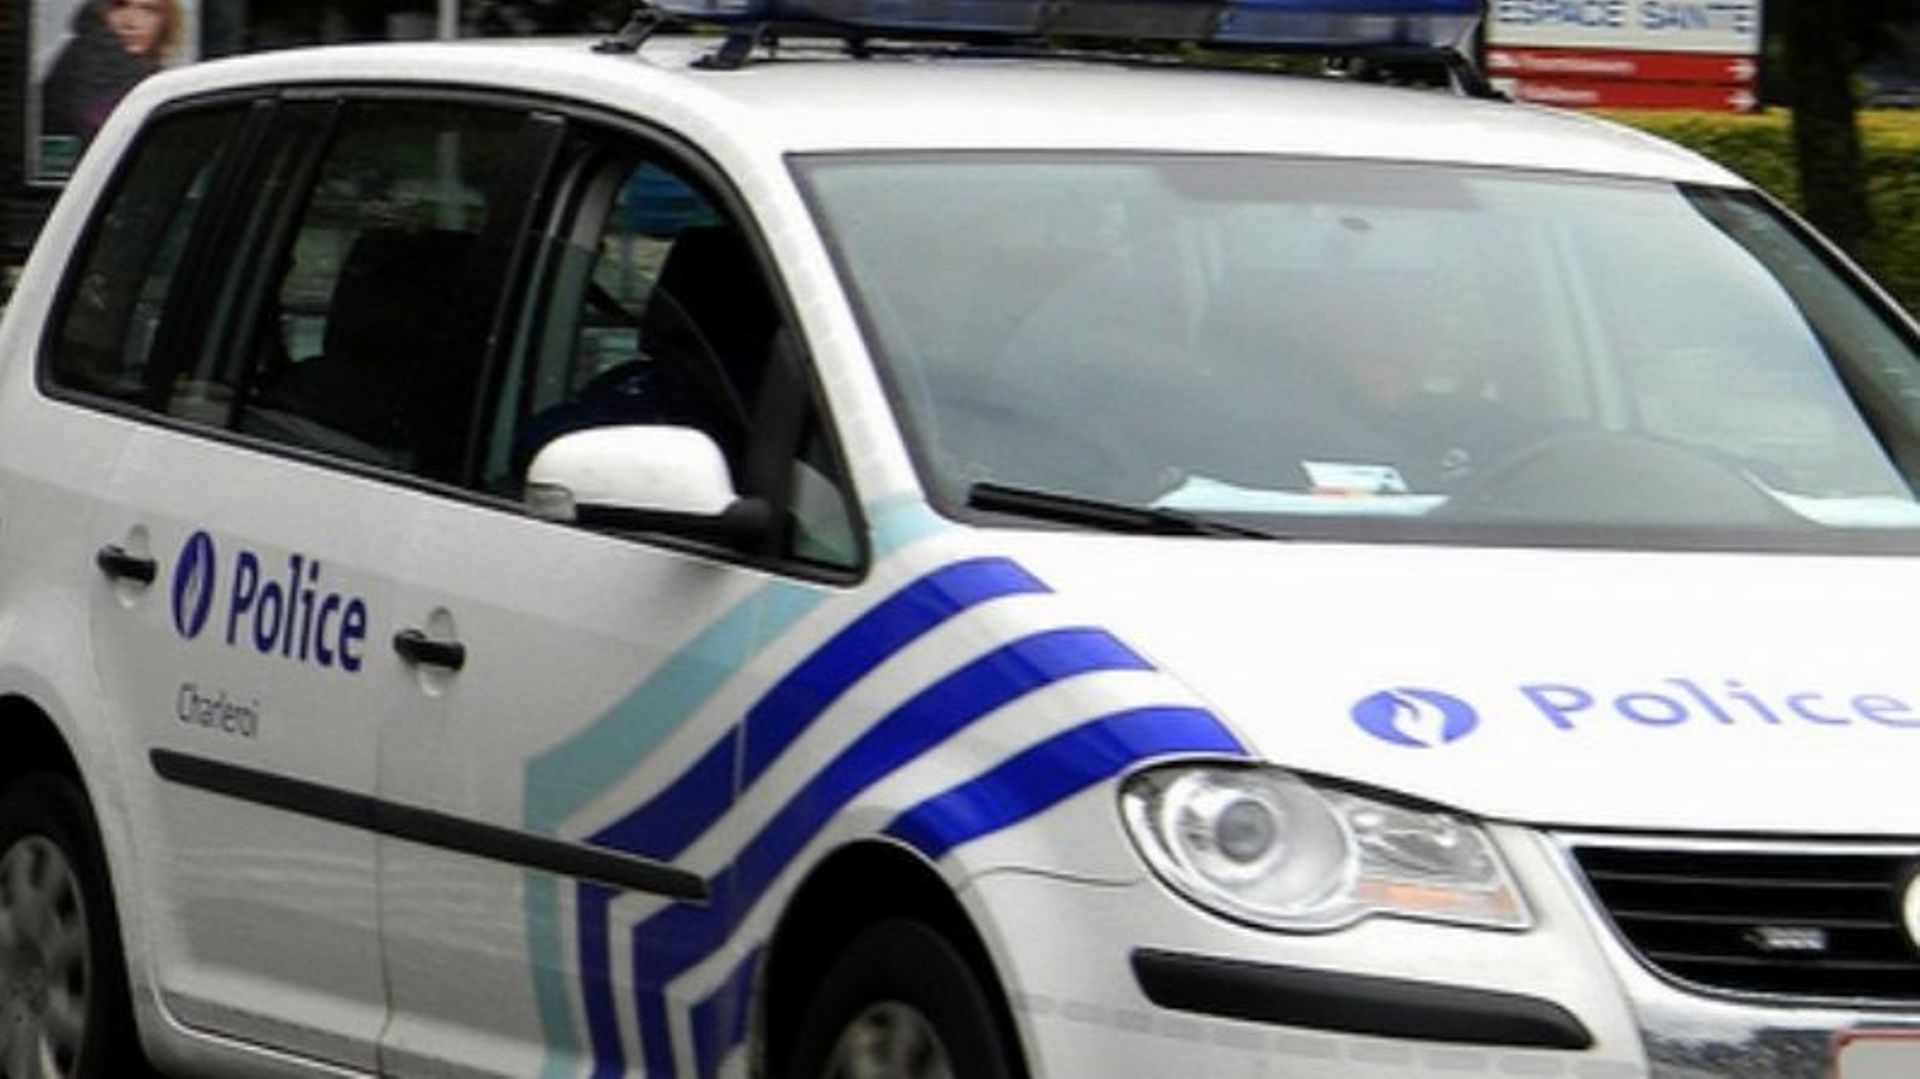 Les policiers français ont appelé en renfort leurs homologues belges pour stopper le véhicule suspect (illustration)